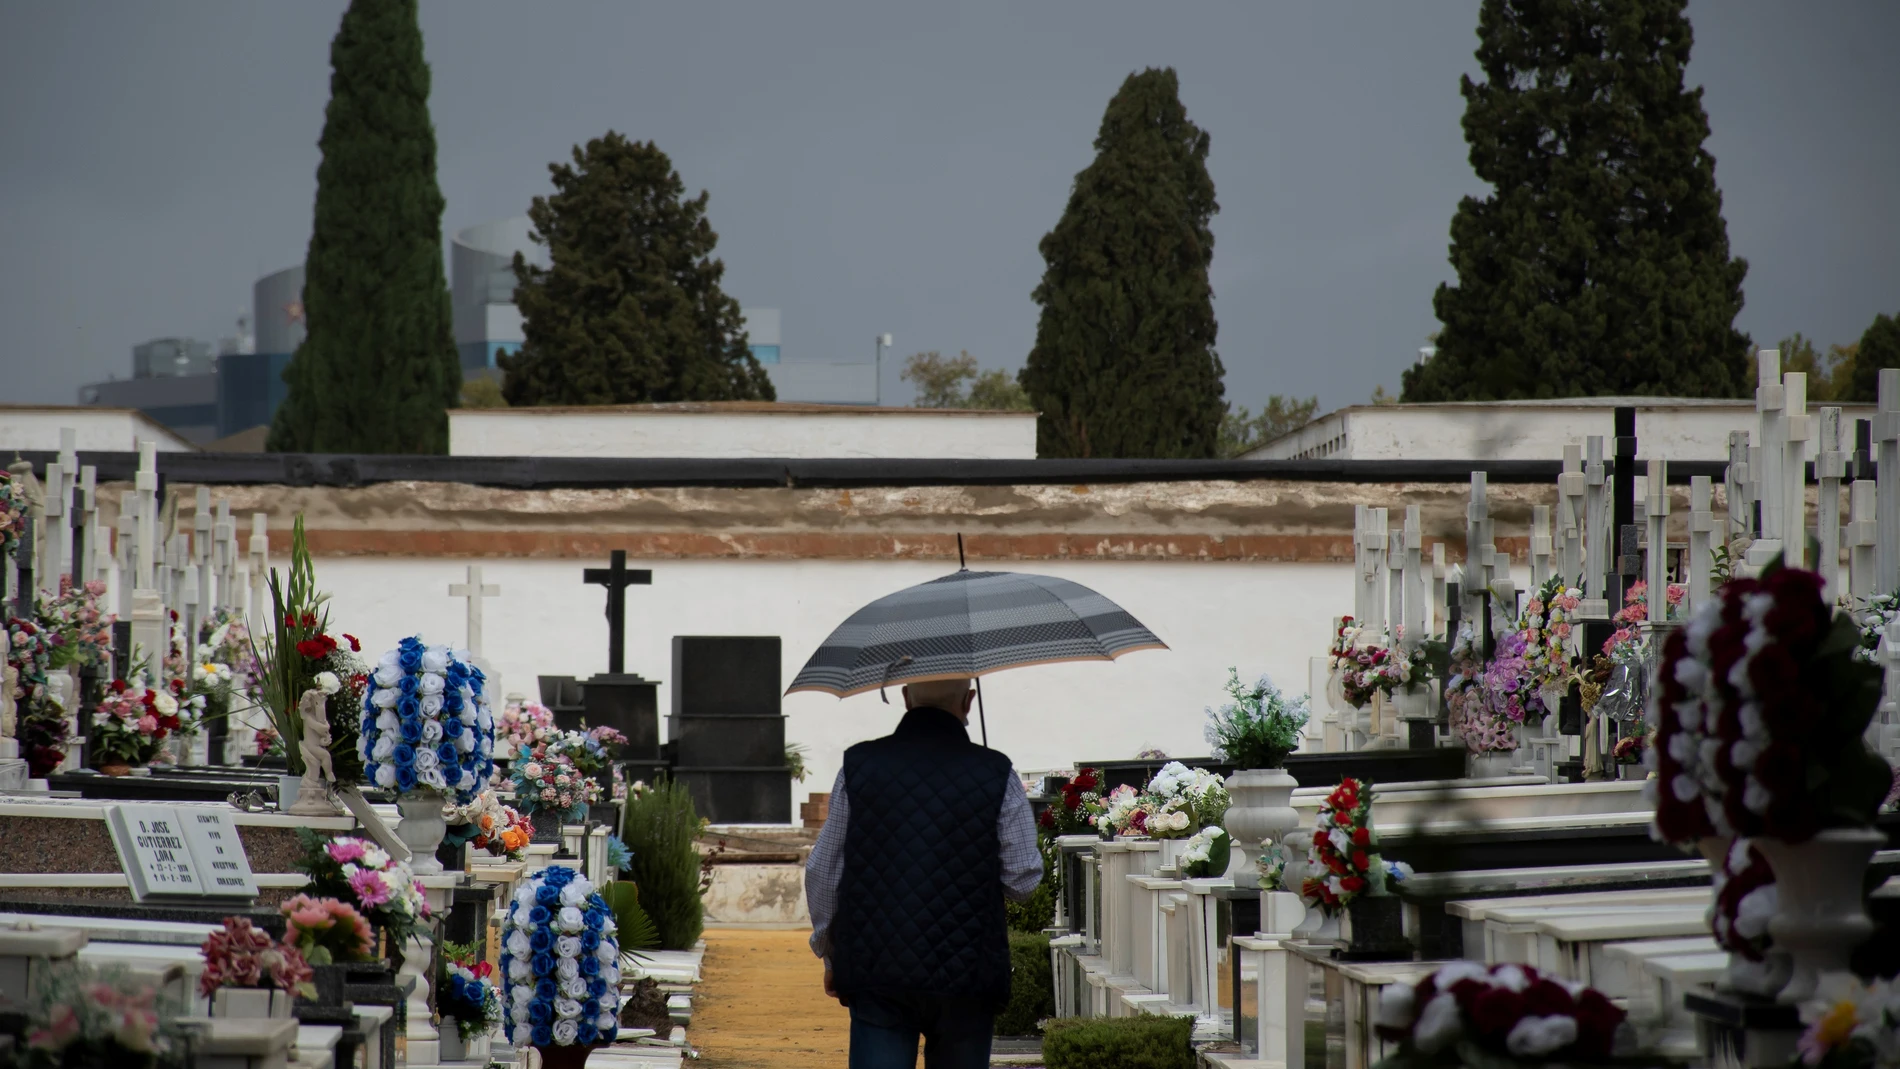 Familiares y amigos visitan a sus seres queridos en el cementerio de San Fernando de Sevilla. EFE/ Raúl Caro.